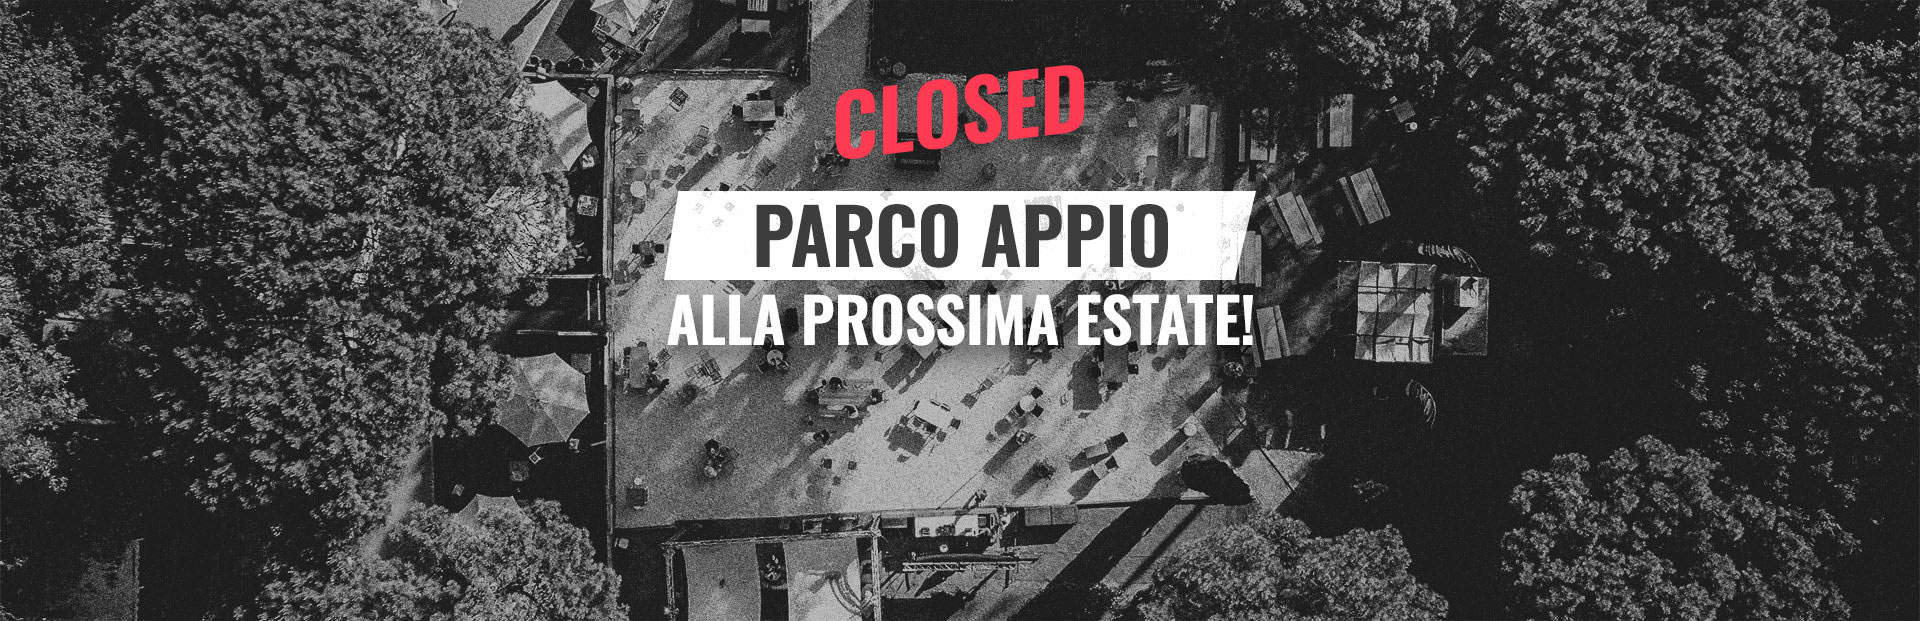 closed-parco-appio